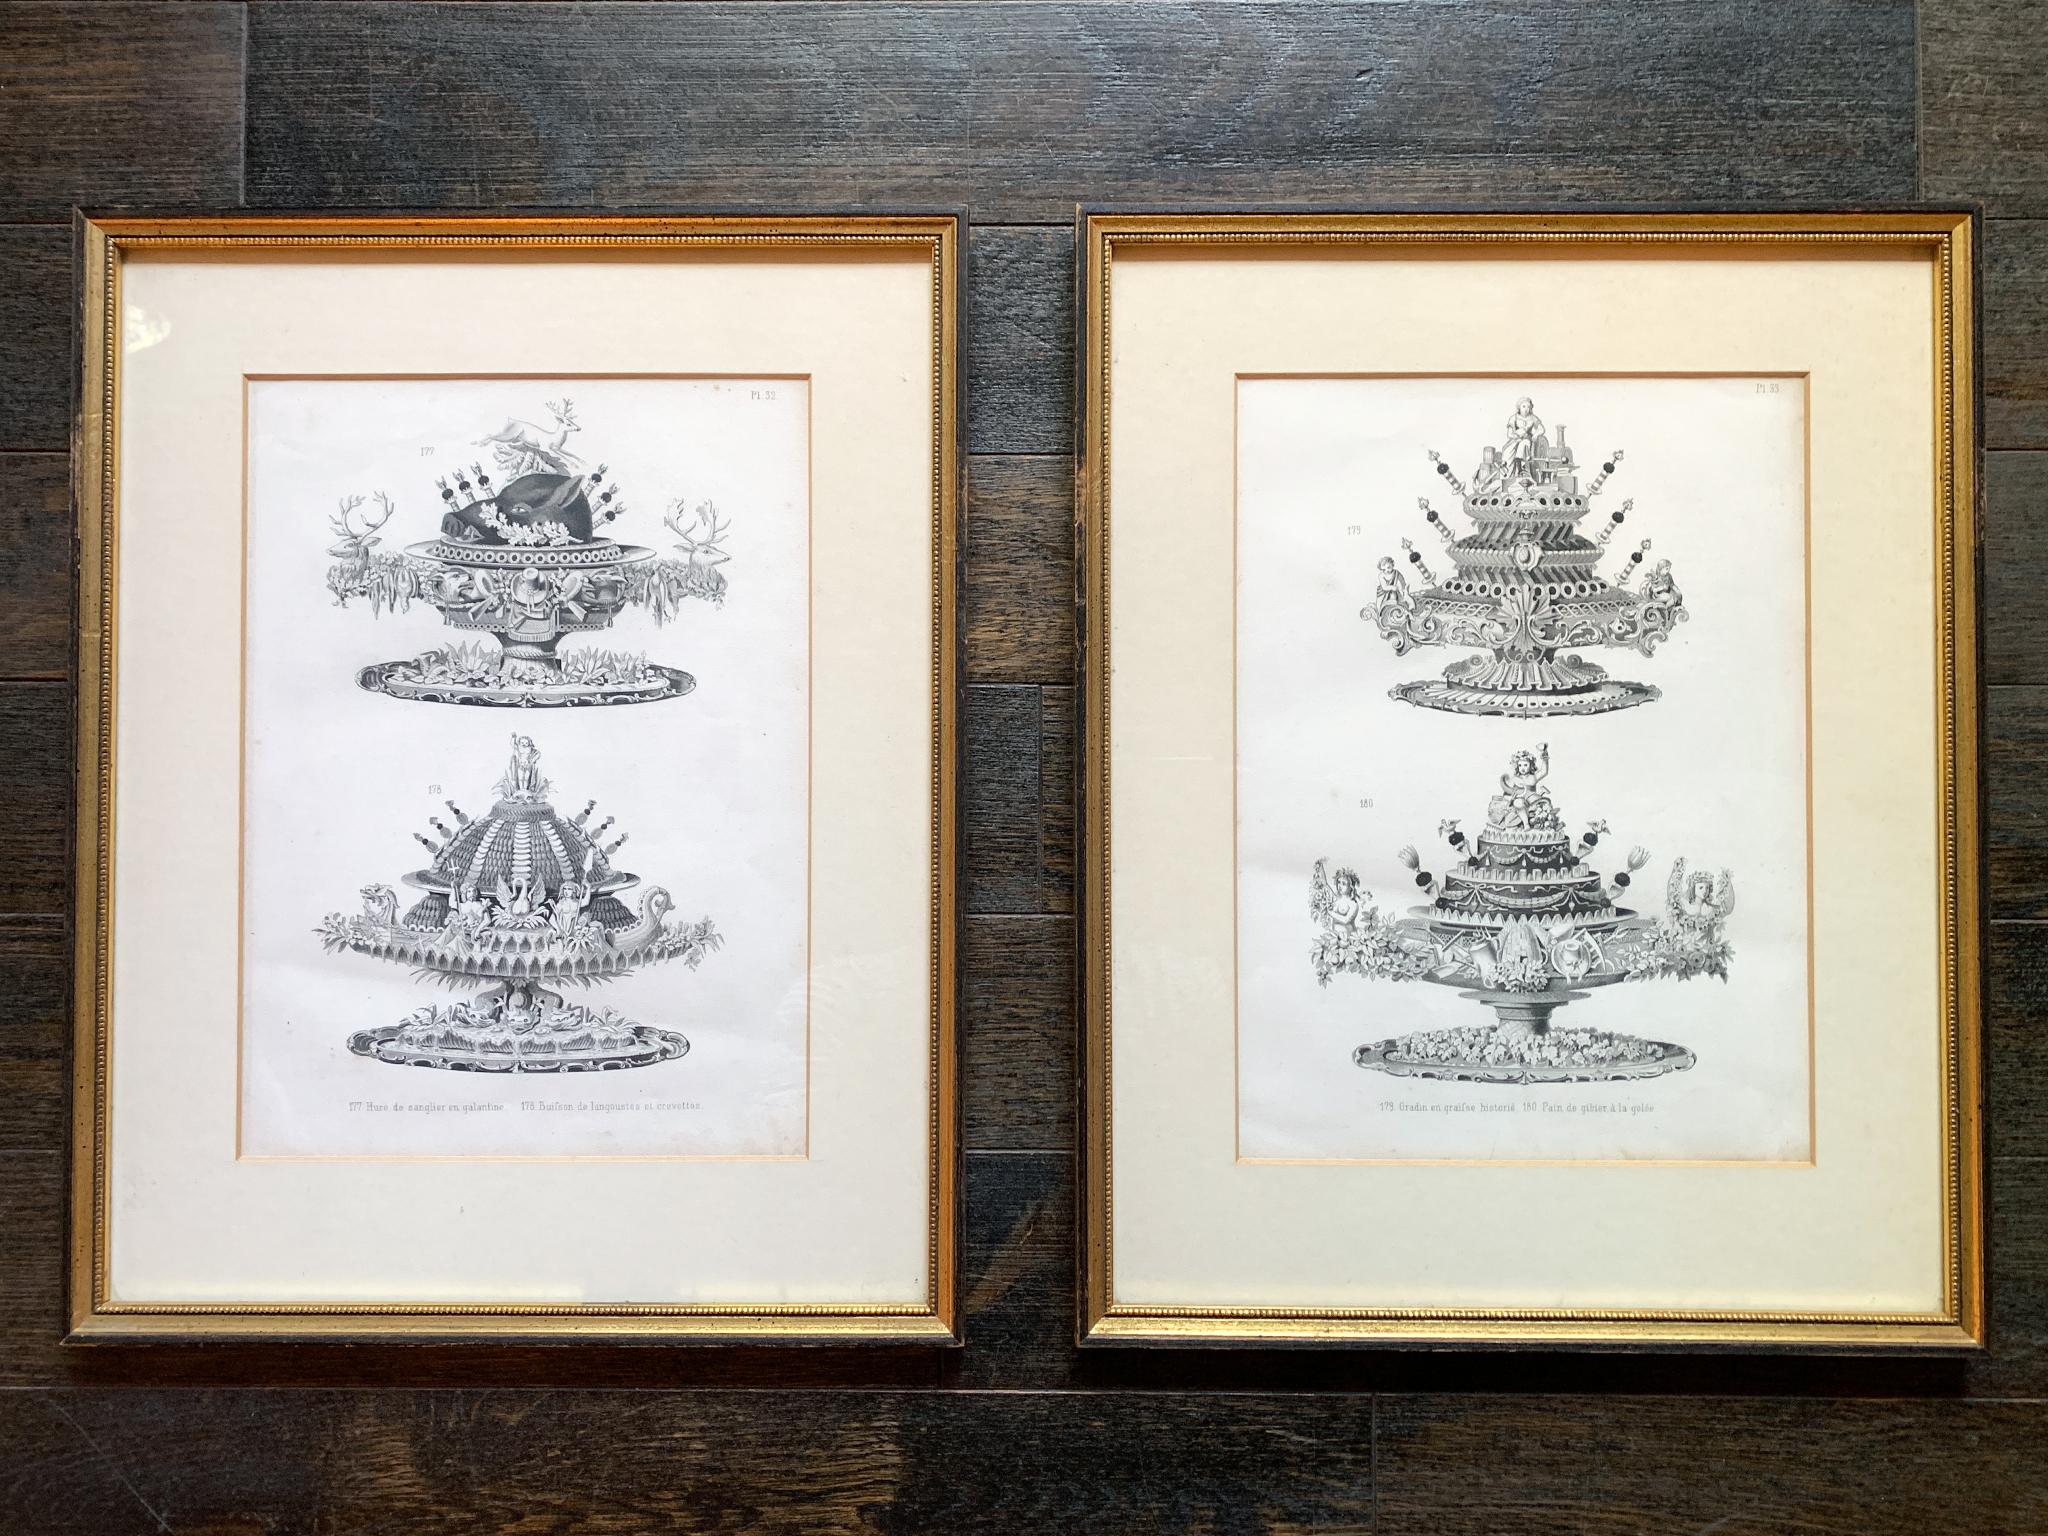 Un ensemble de 4 gravures en noir et blanc tirées du livre La Cuisine Classique des chefs Émile Bernard et Urbain Dubois. Publiées au XIXe siècle, les illustrations représentent une cuisine et des centres de table élaborés. Deux gravures sont